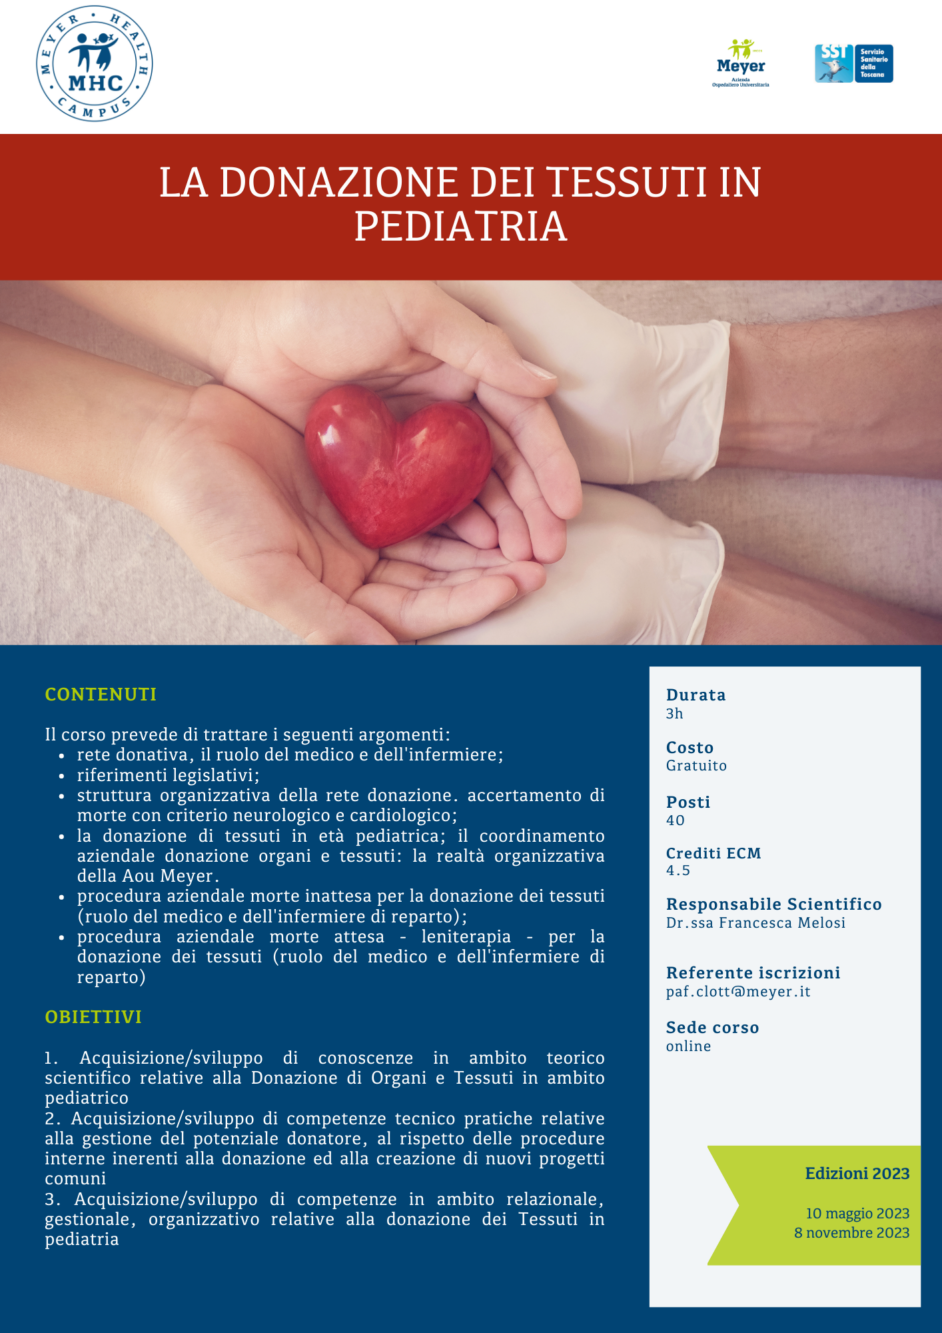 La donazione dei tessuti in età pediatrica (10 maggio 2023)